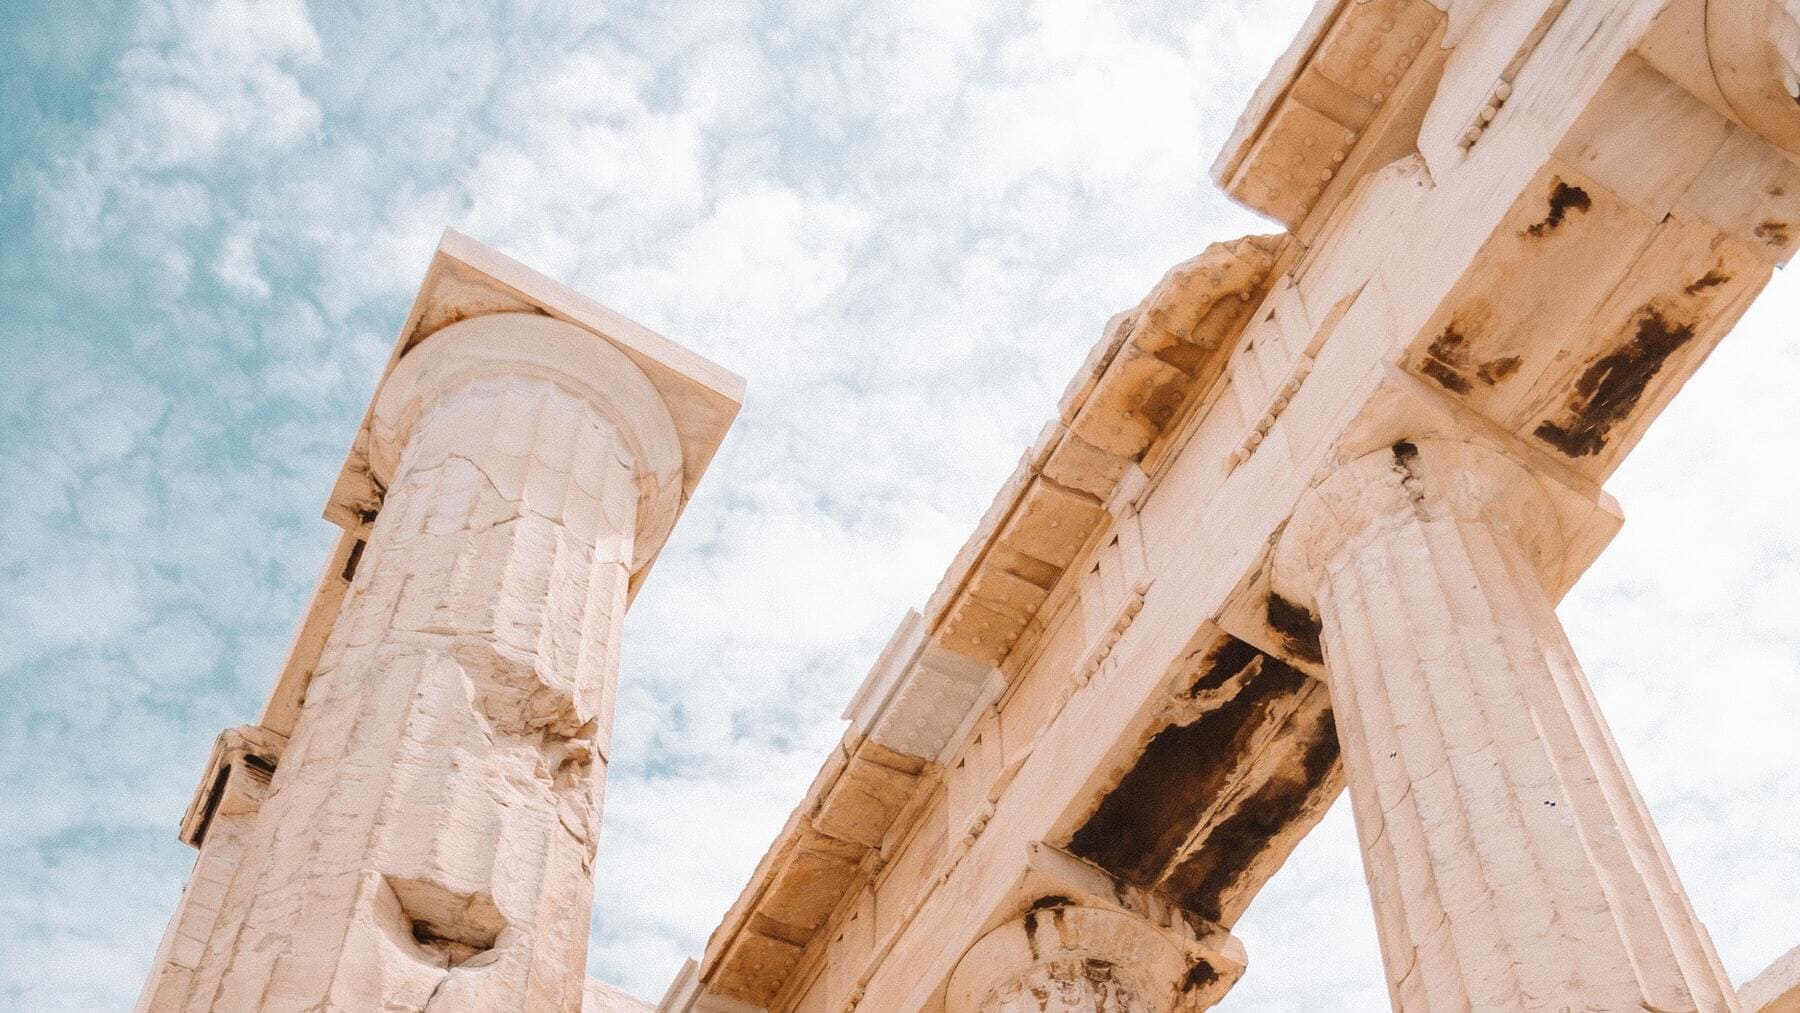 ¿Cómo era la Antigua Grecia? Datos curiosos